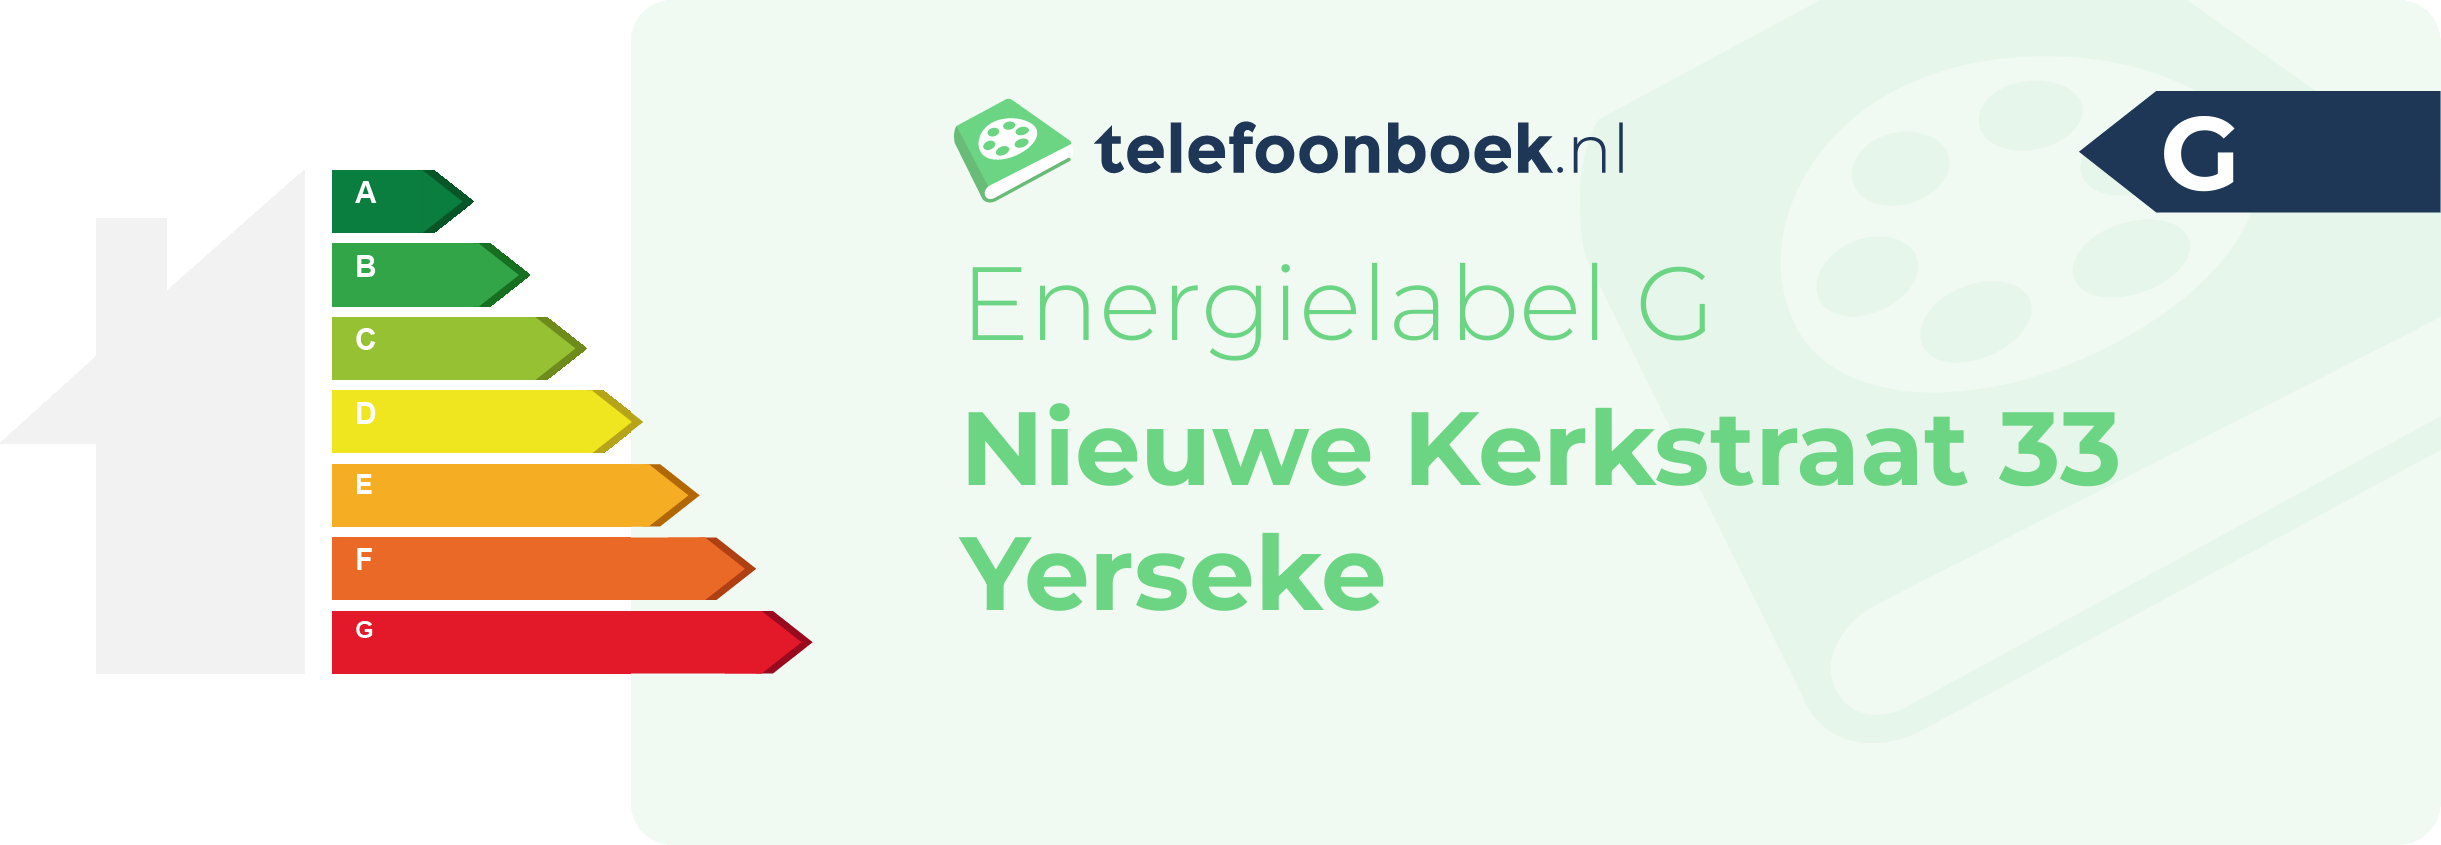 Energielabel Nieuwe Kerkstraat 33 Yerseke